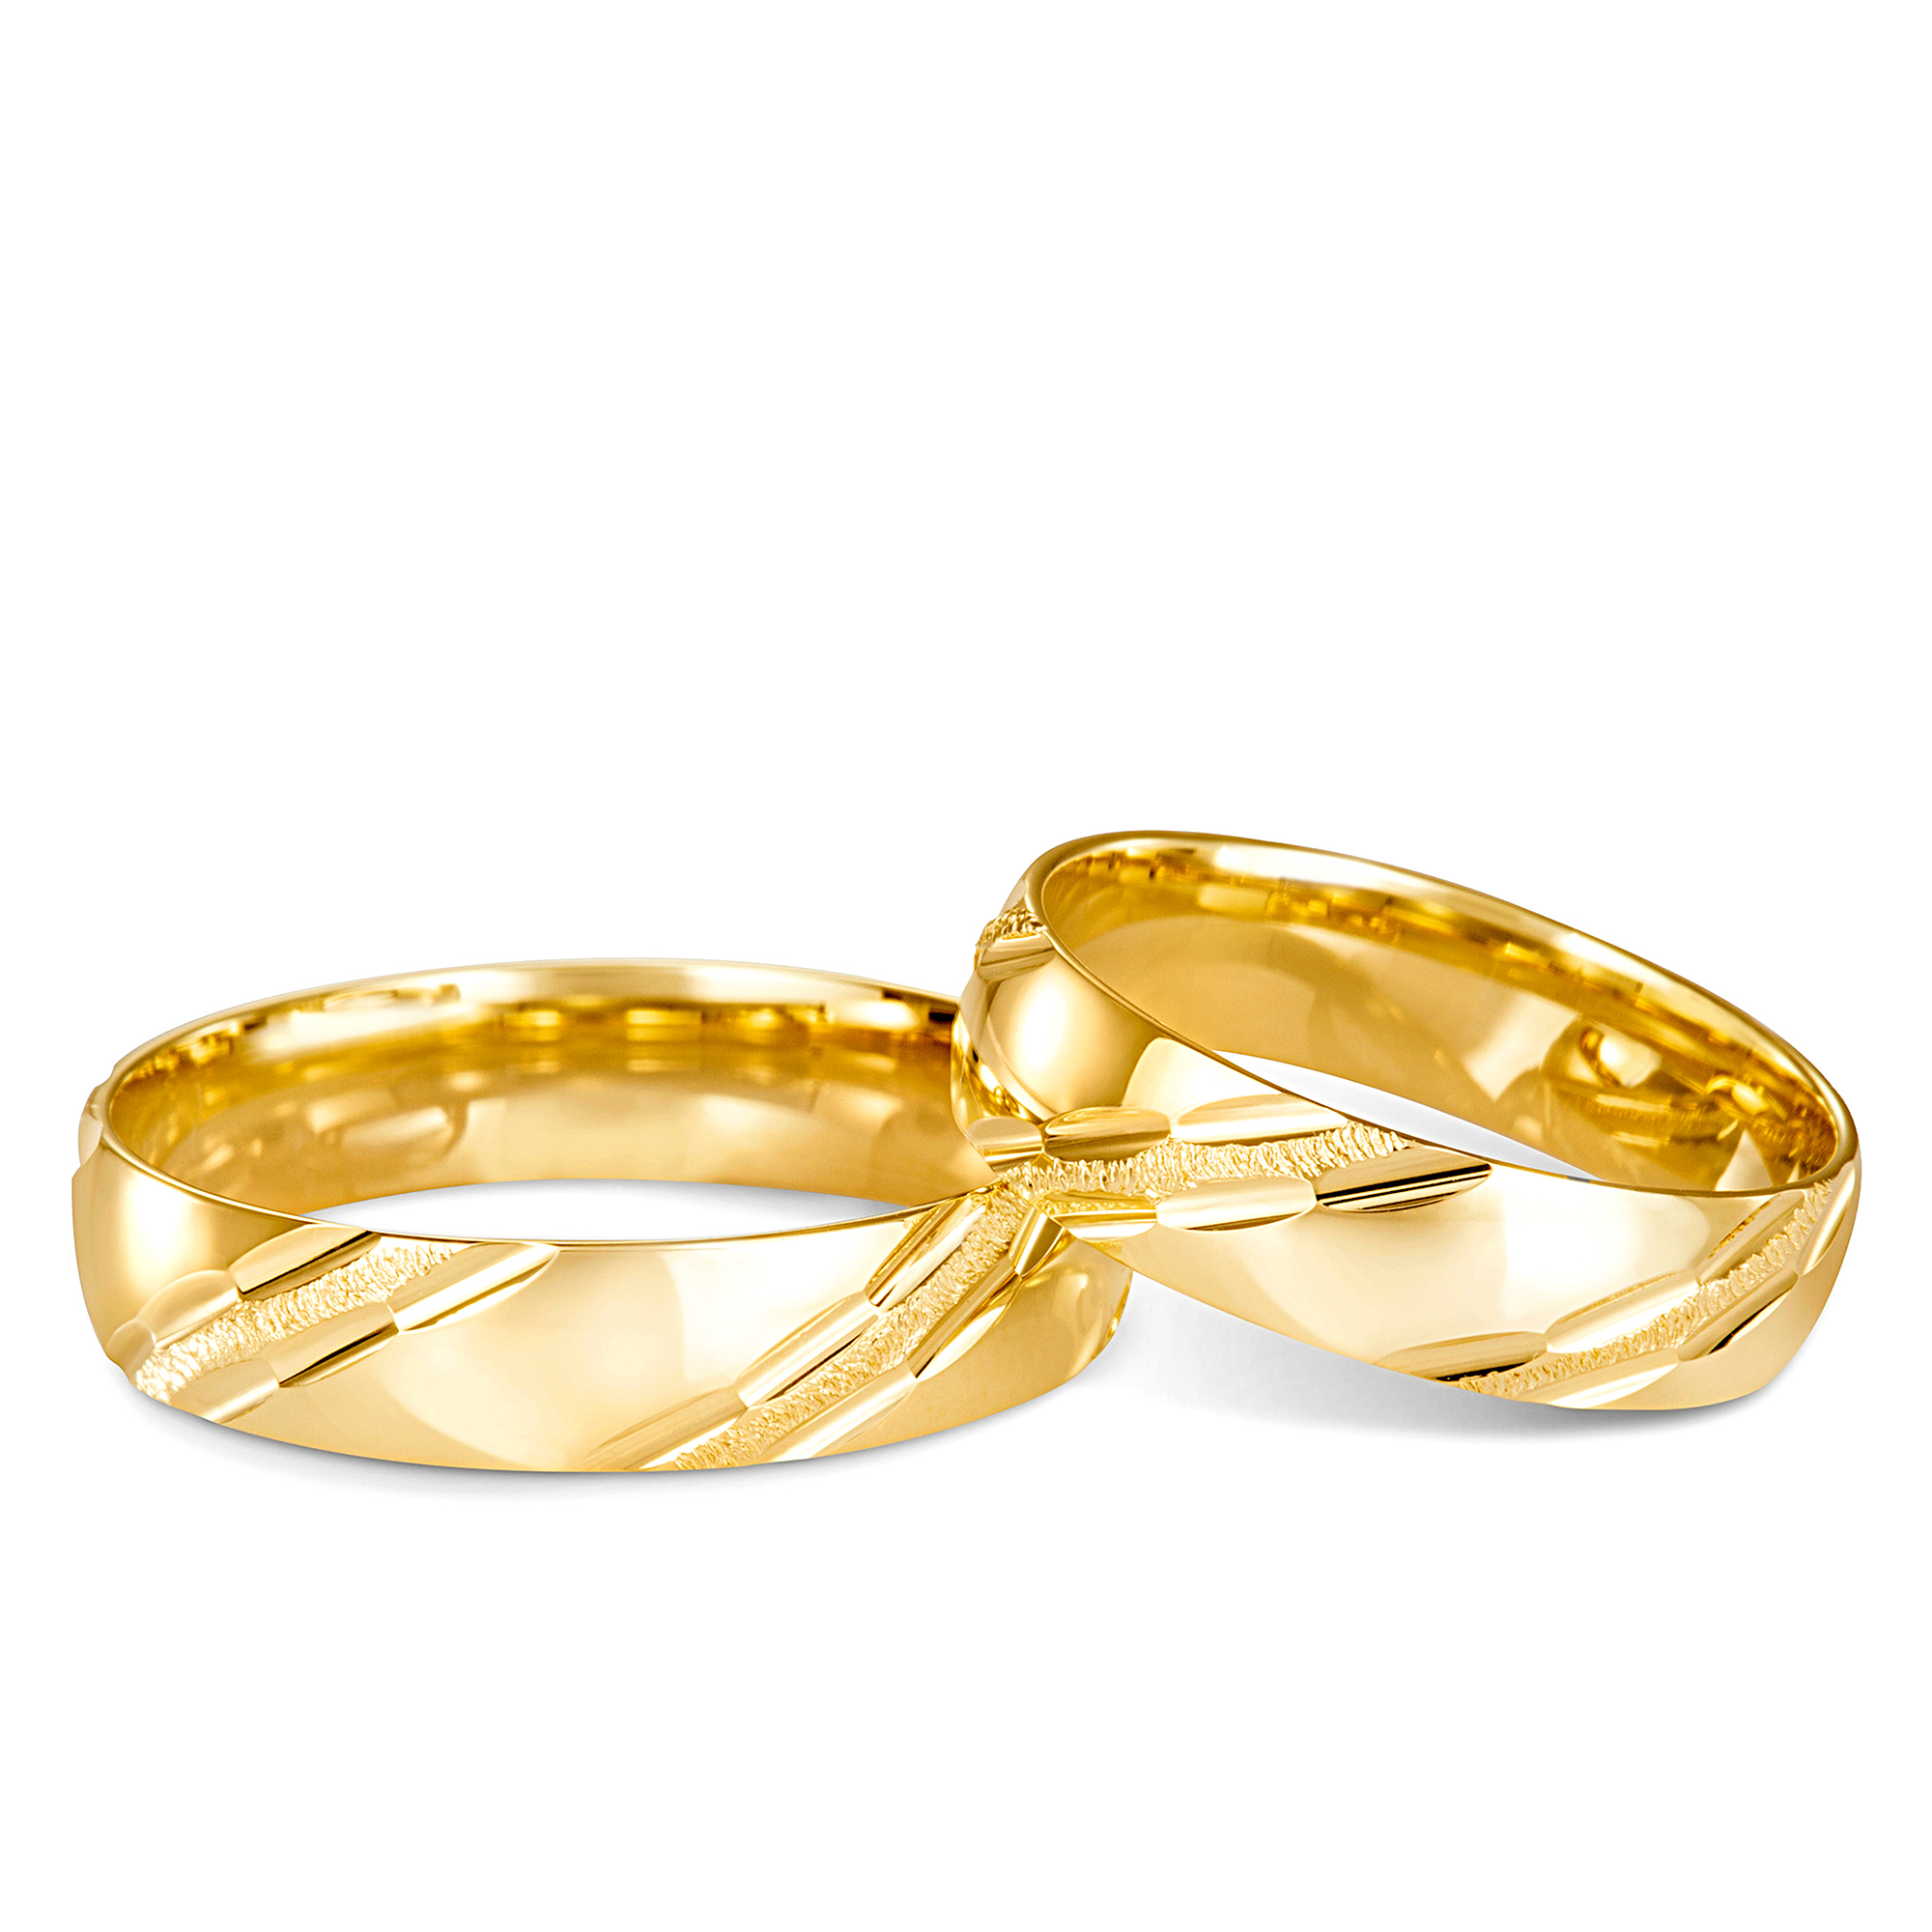 Obrączki ślubne klasyczne złote półokrągłe L01, próba 585